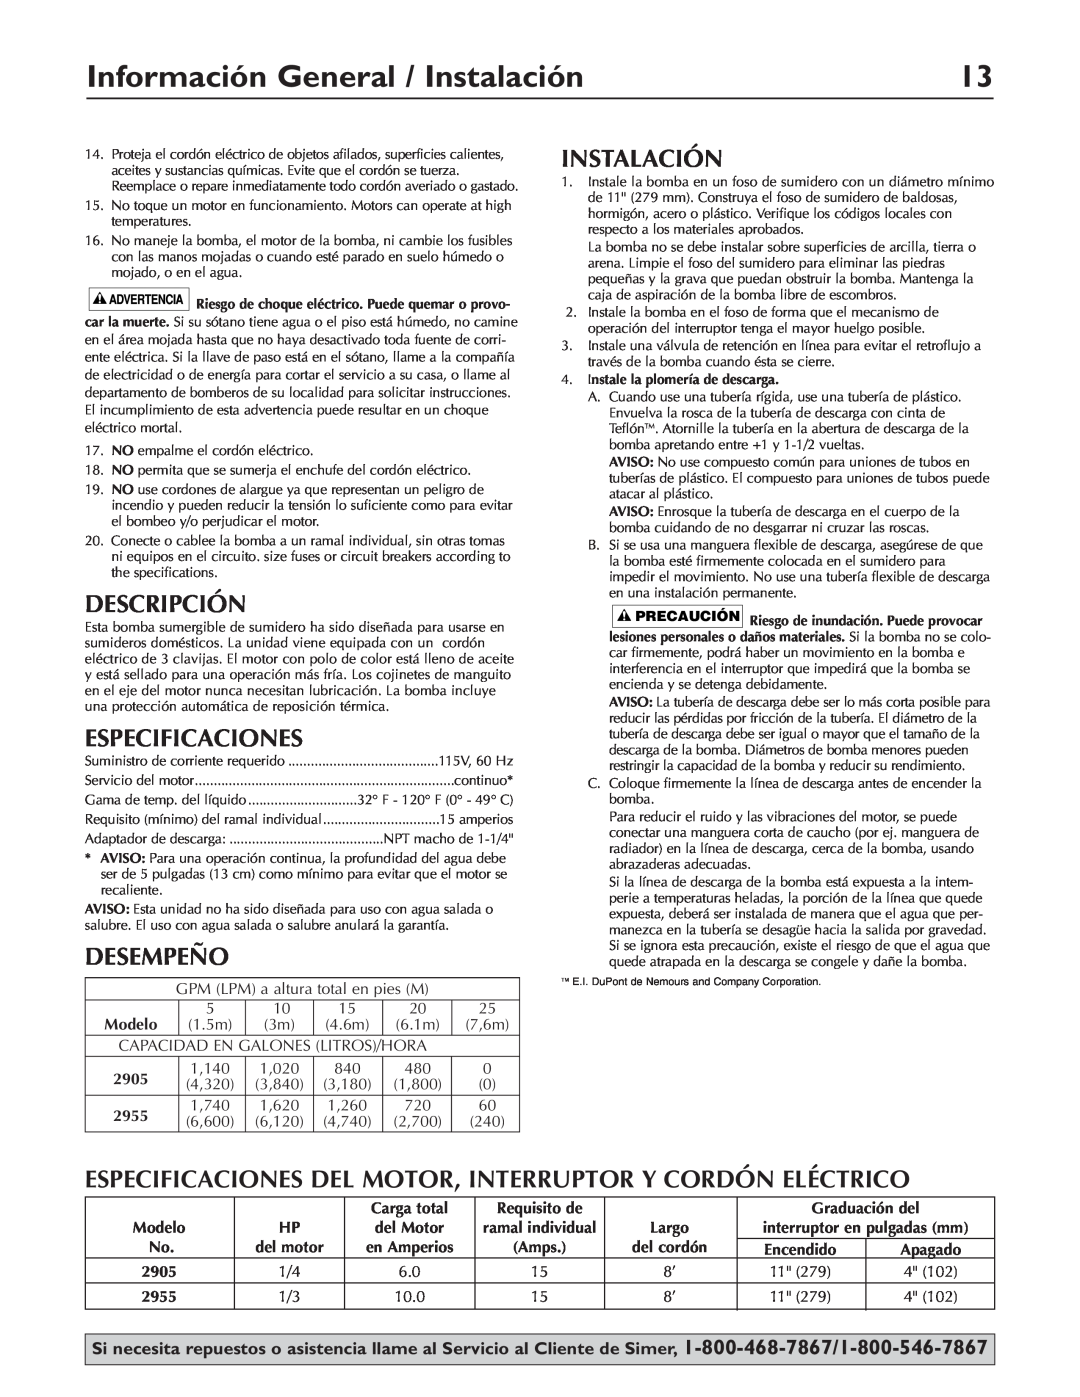 Simer Pumps 2905, 2955 owner manual Información General / Instalación, Descripción, Especificaciones, Desempeño 